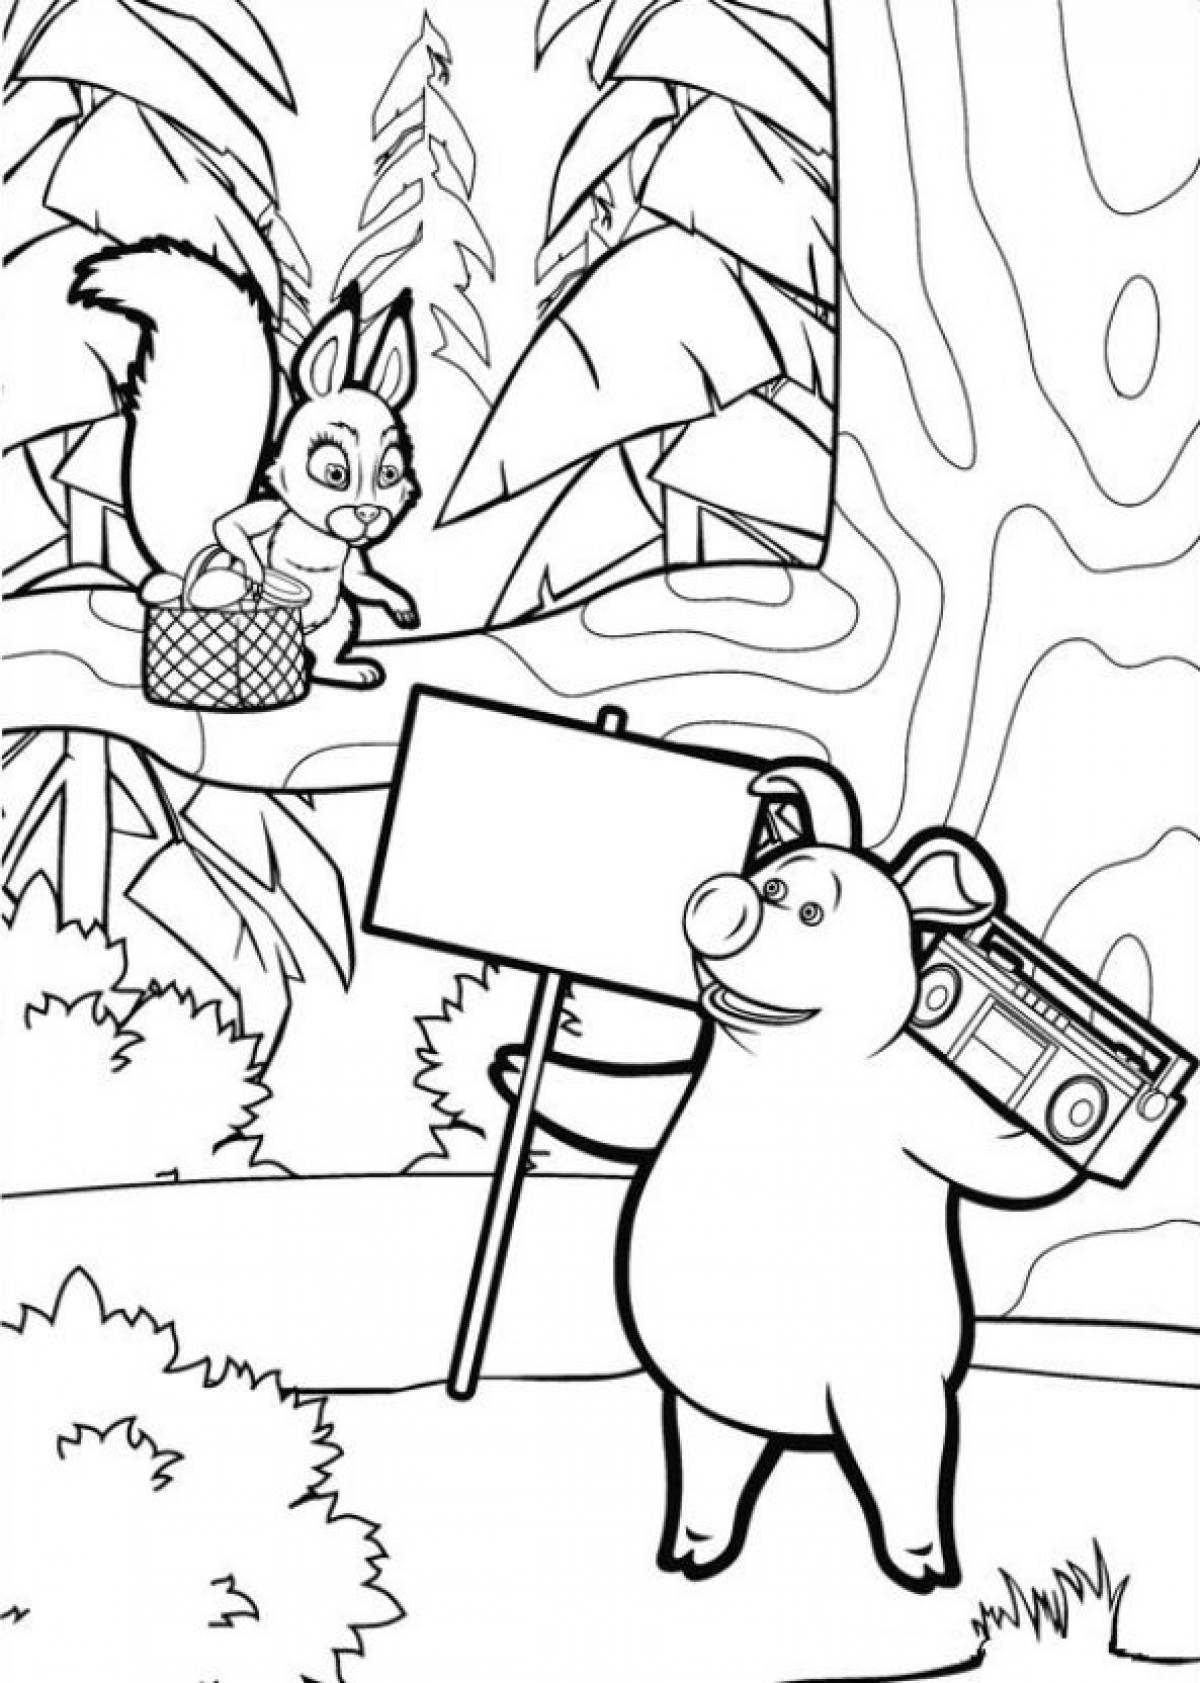 Раскраски маша и медведь распечатать формат а4. Медведь из мультфильма Маша и медведь раскраска. Свинья из мультика Маша и медведь раскраска. Раскраска Маша и медведь поросенок. Раскраска Маша и медведь персонажи мультика.